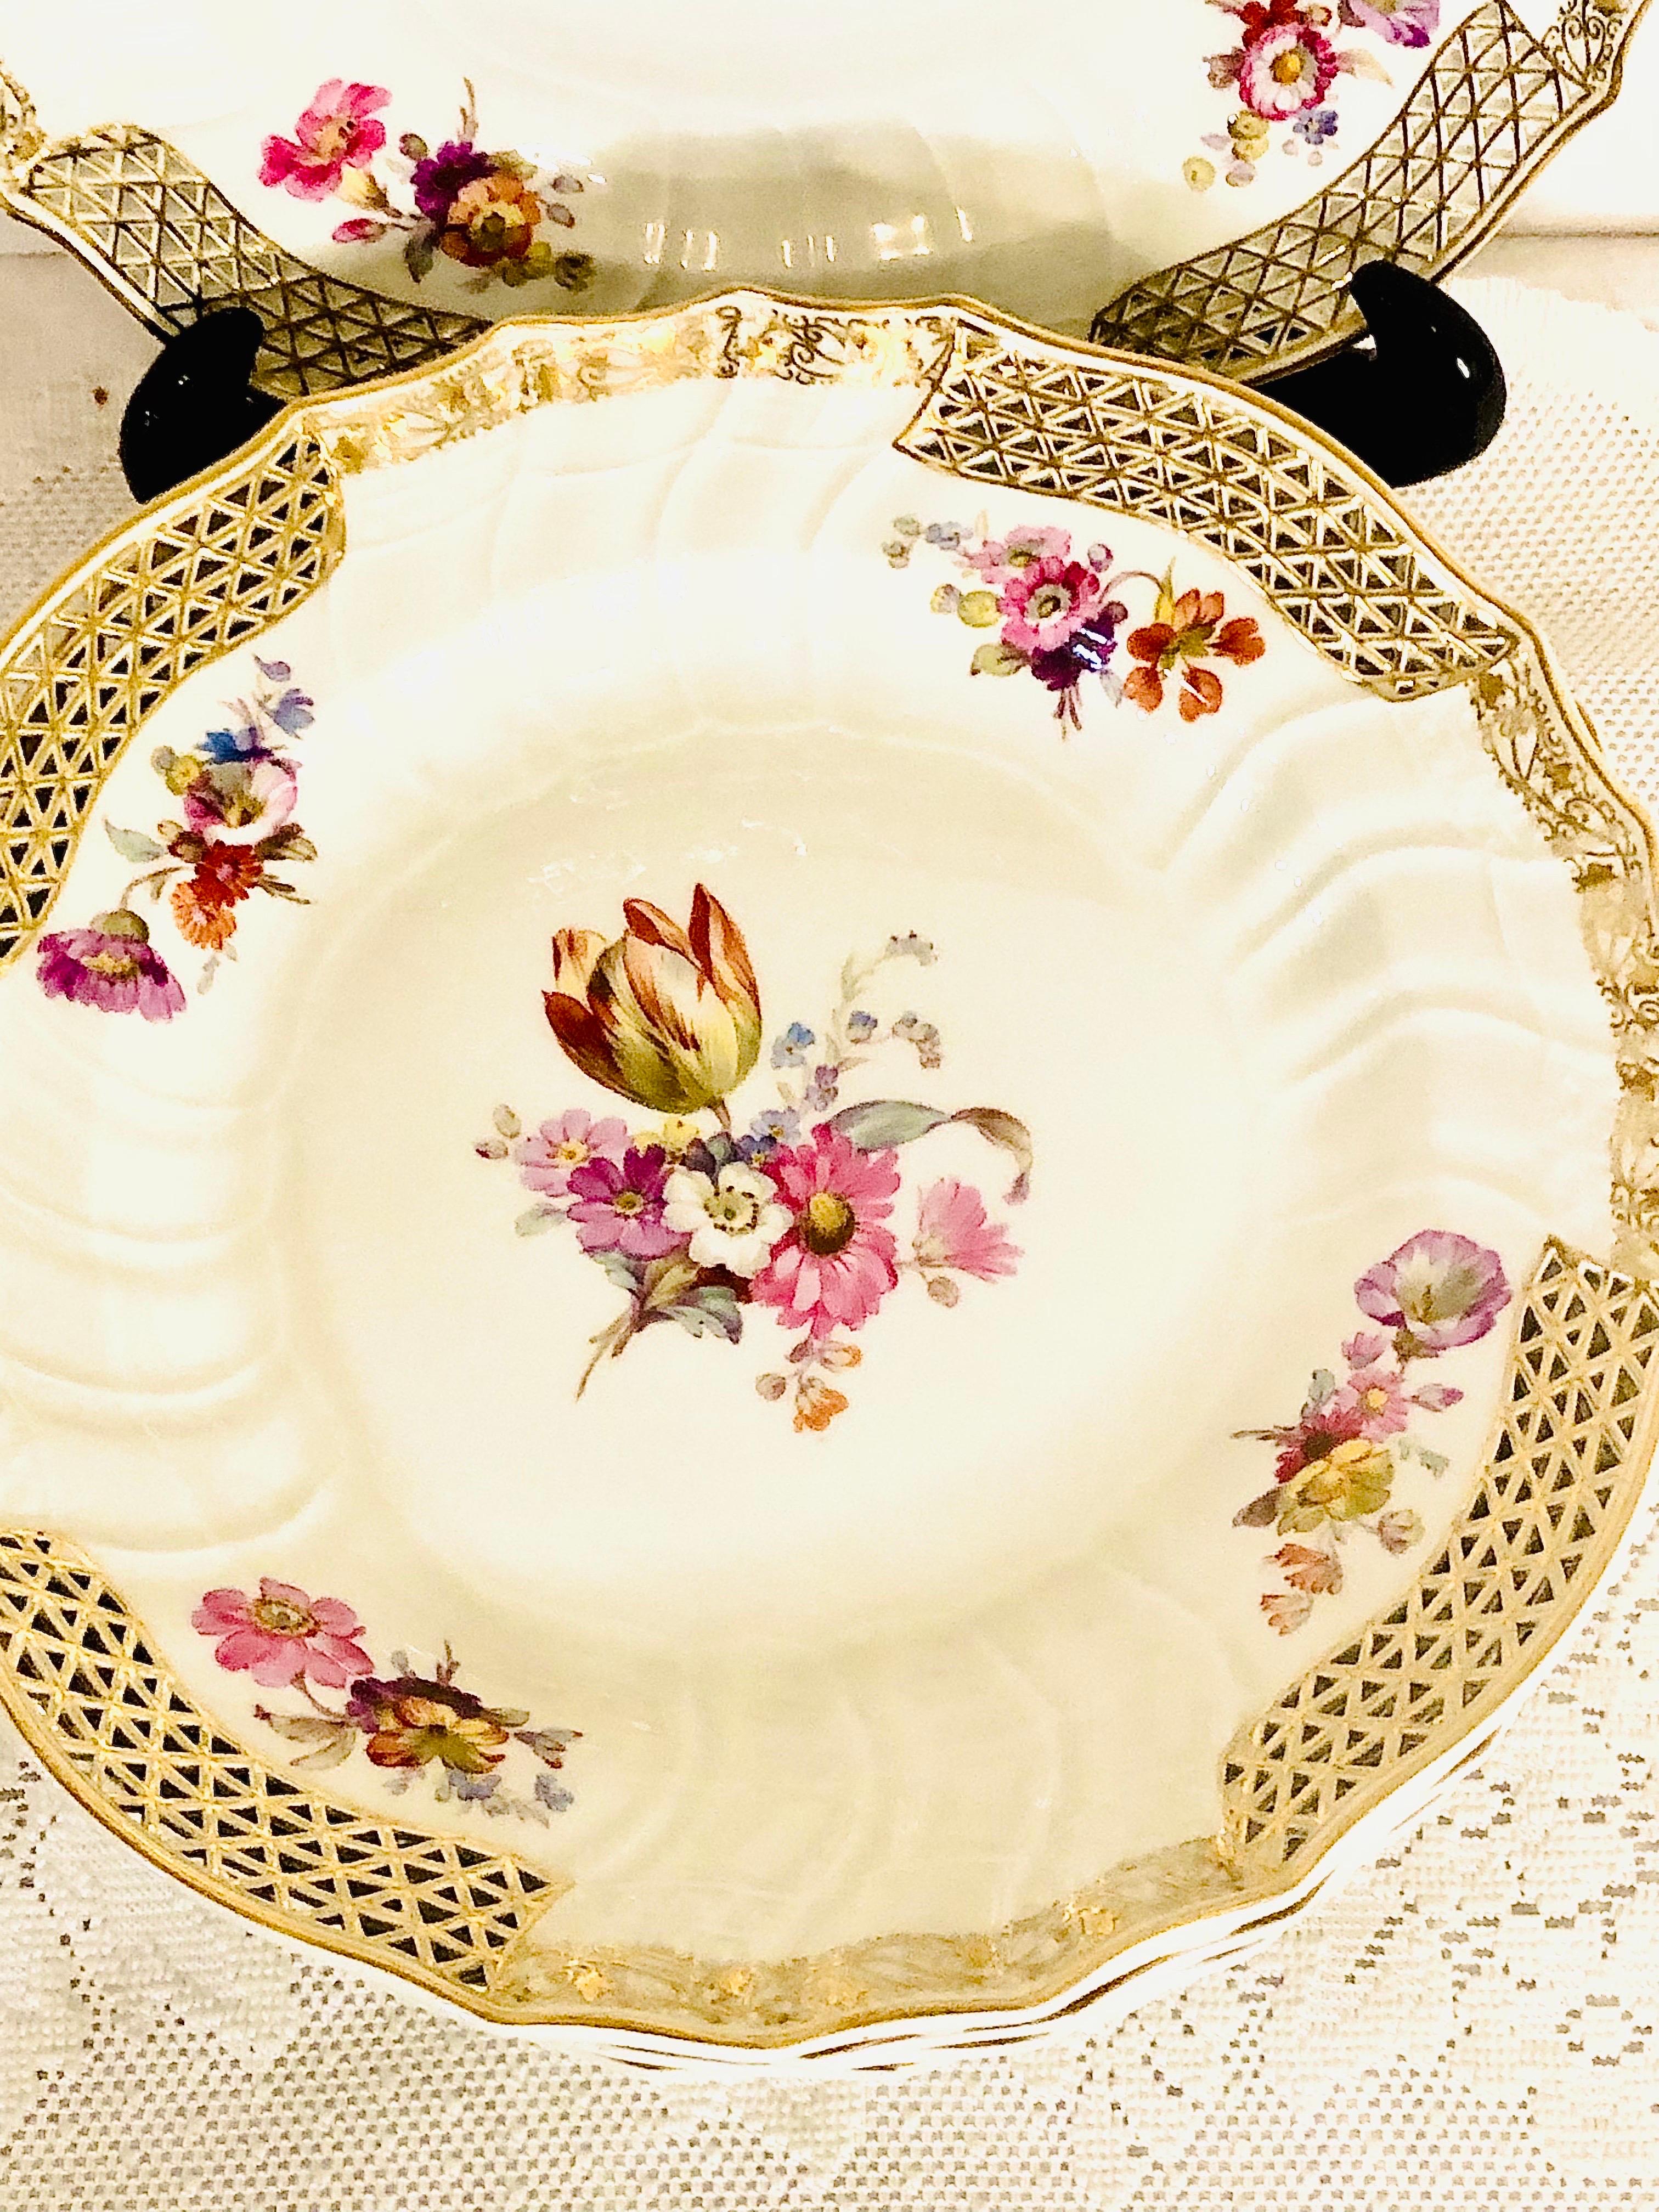 Ensemble de huit assiettes à dîner KPM rares avec différents bouquets floraux peints à la main de qualité muséale sur chaque assiette. La KPM est également connue sous le nom de Konigliche Porzellan-Manufaktur d'Allemagne. Ils avaient des artistes